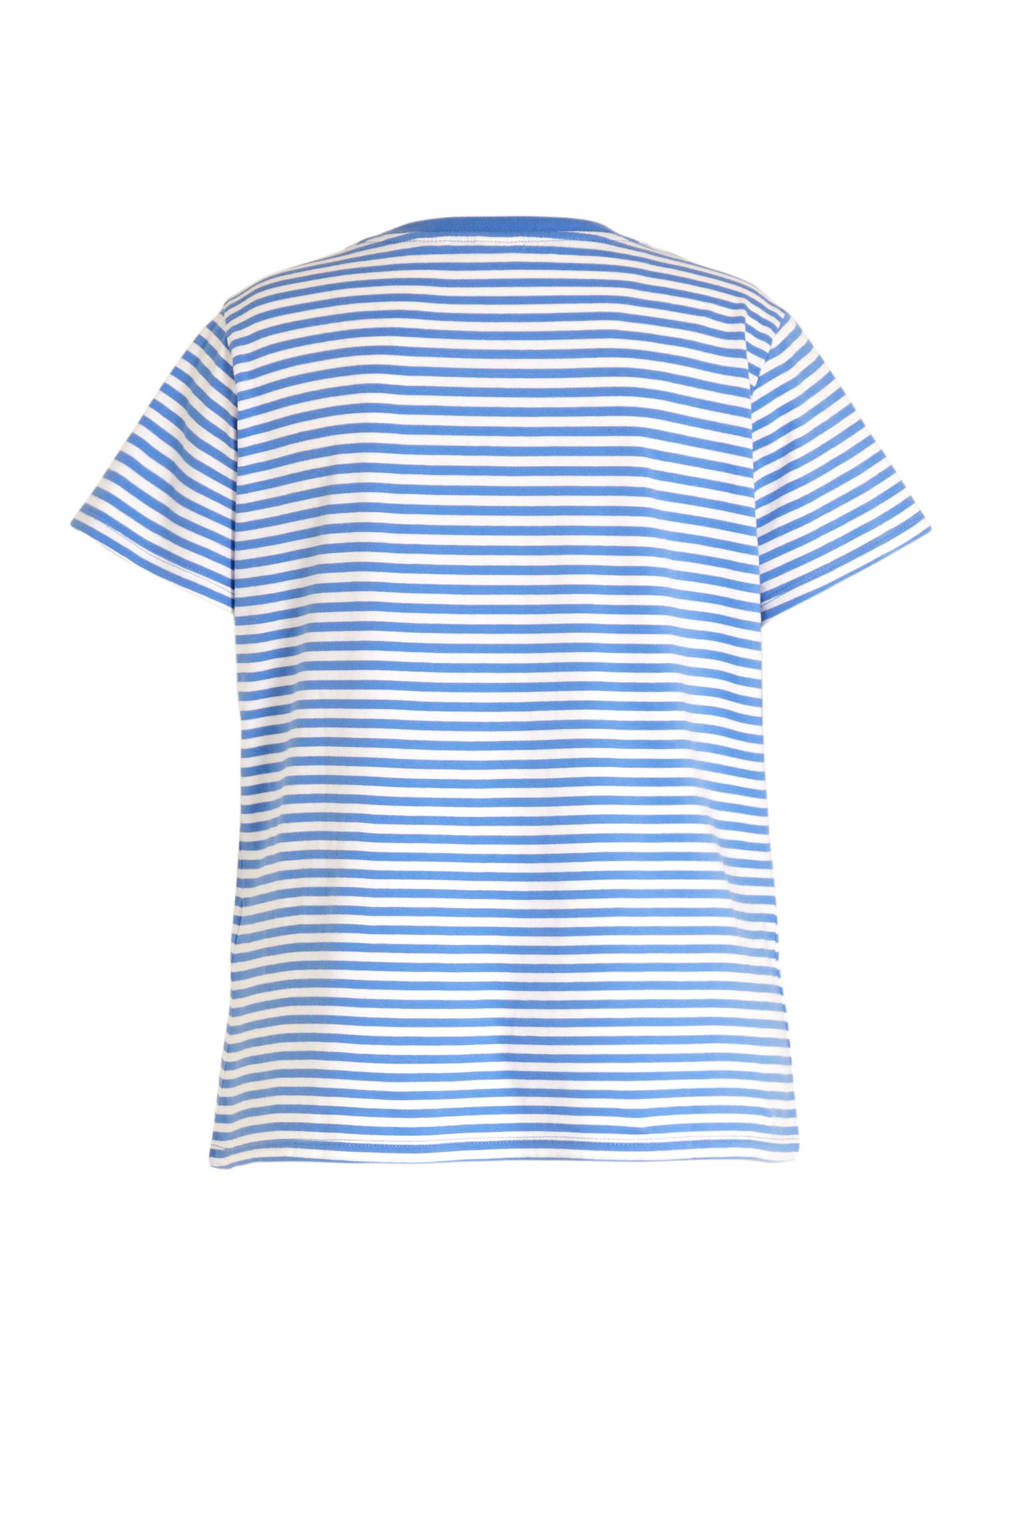 Wonderlijk Levi's Plus gestreept T-shirt blauw/wit | wehkamp LD-21